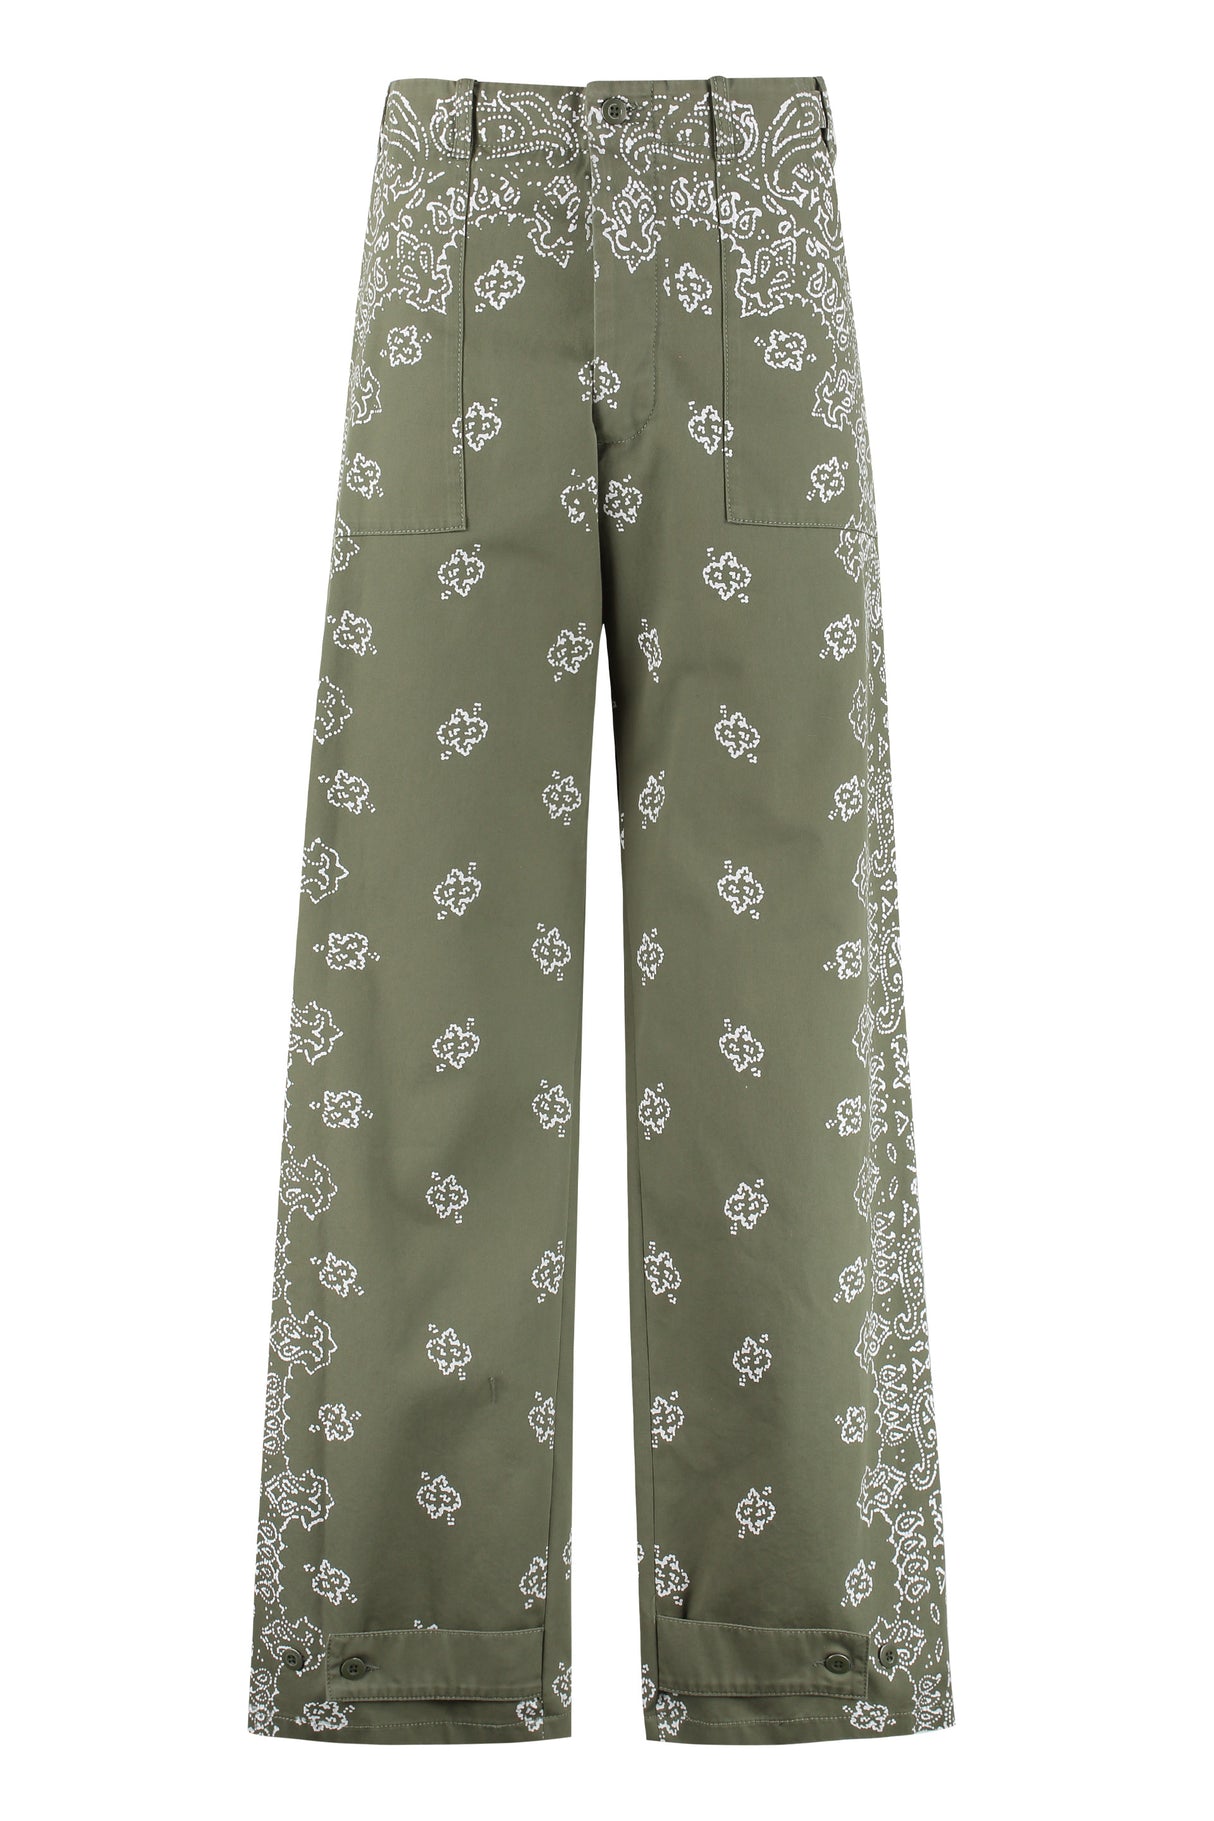 Quần cotton in họa tiết bandana xanh lá cho nam - Bộ sưu tập FW24